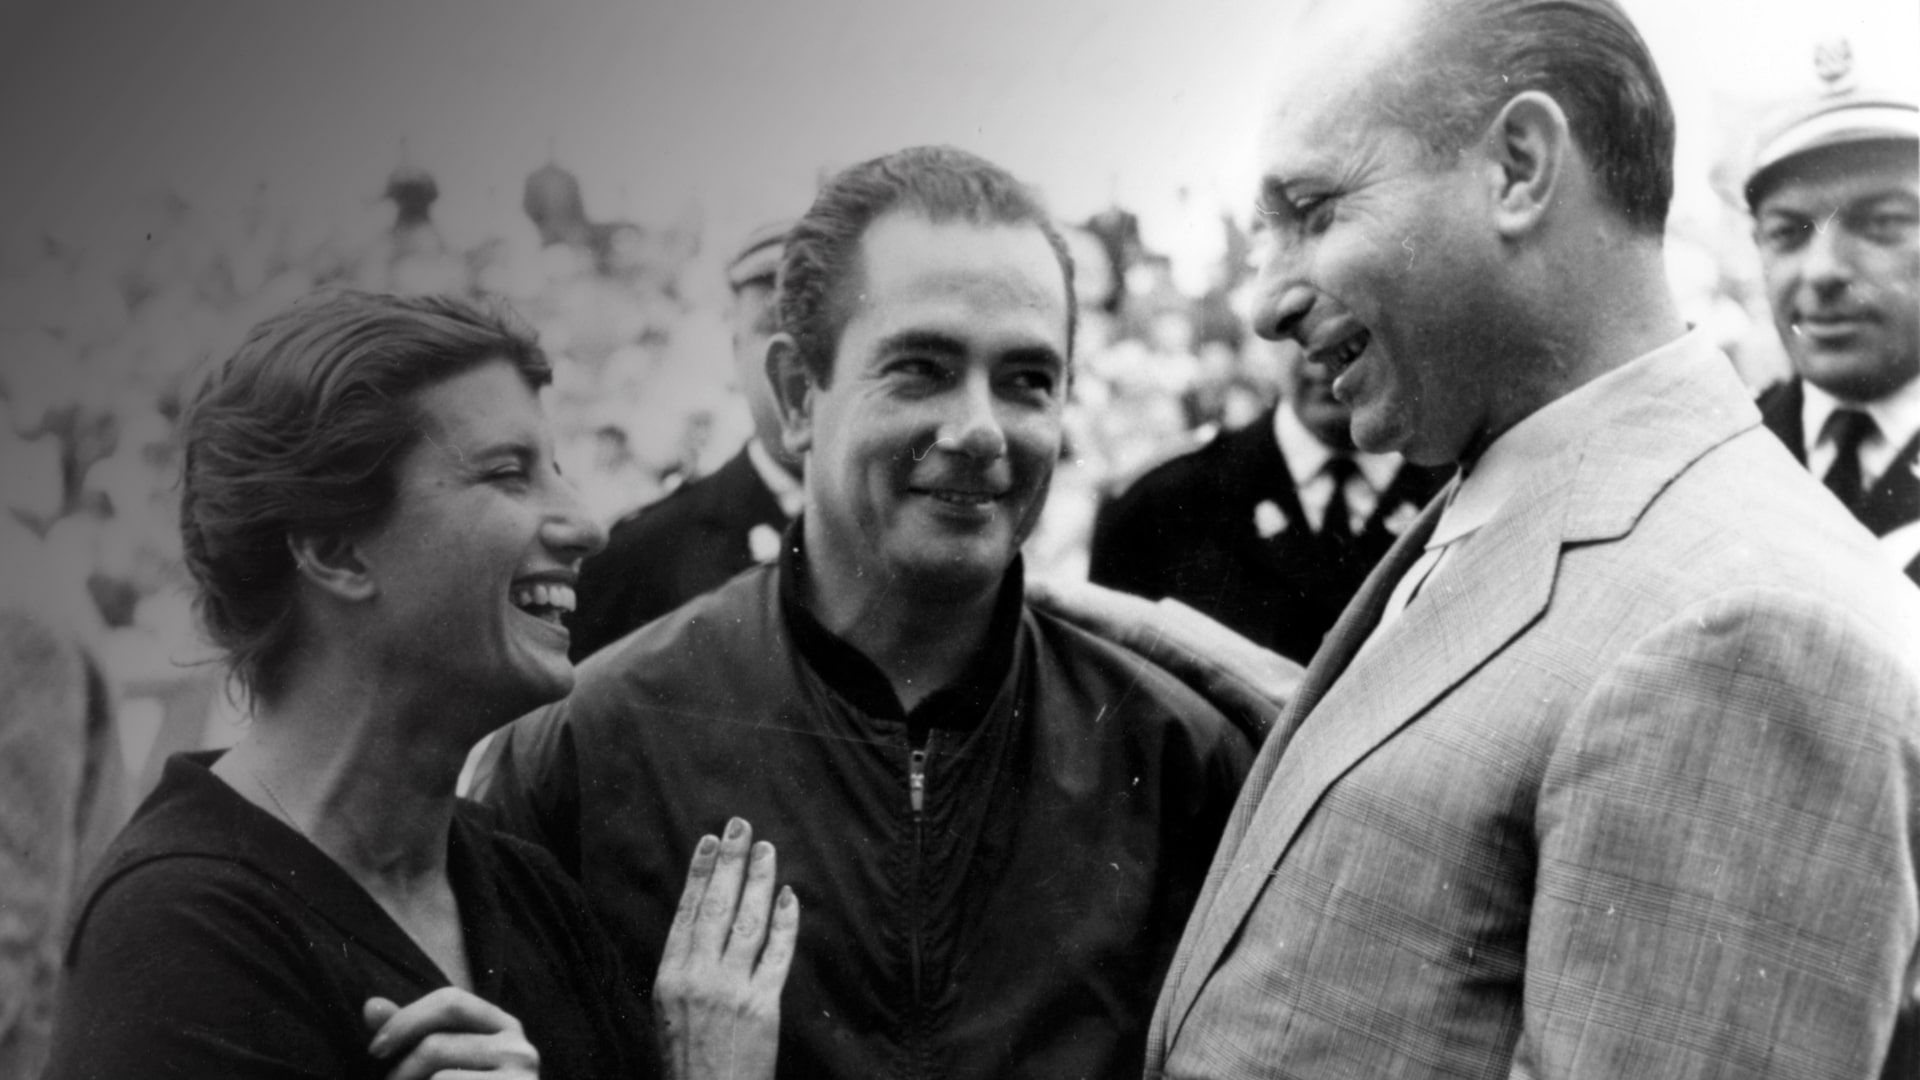 Maseratista: Coureur Fangio end e Sjah van Perzië in gesprek